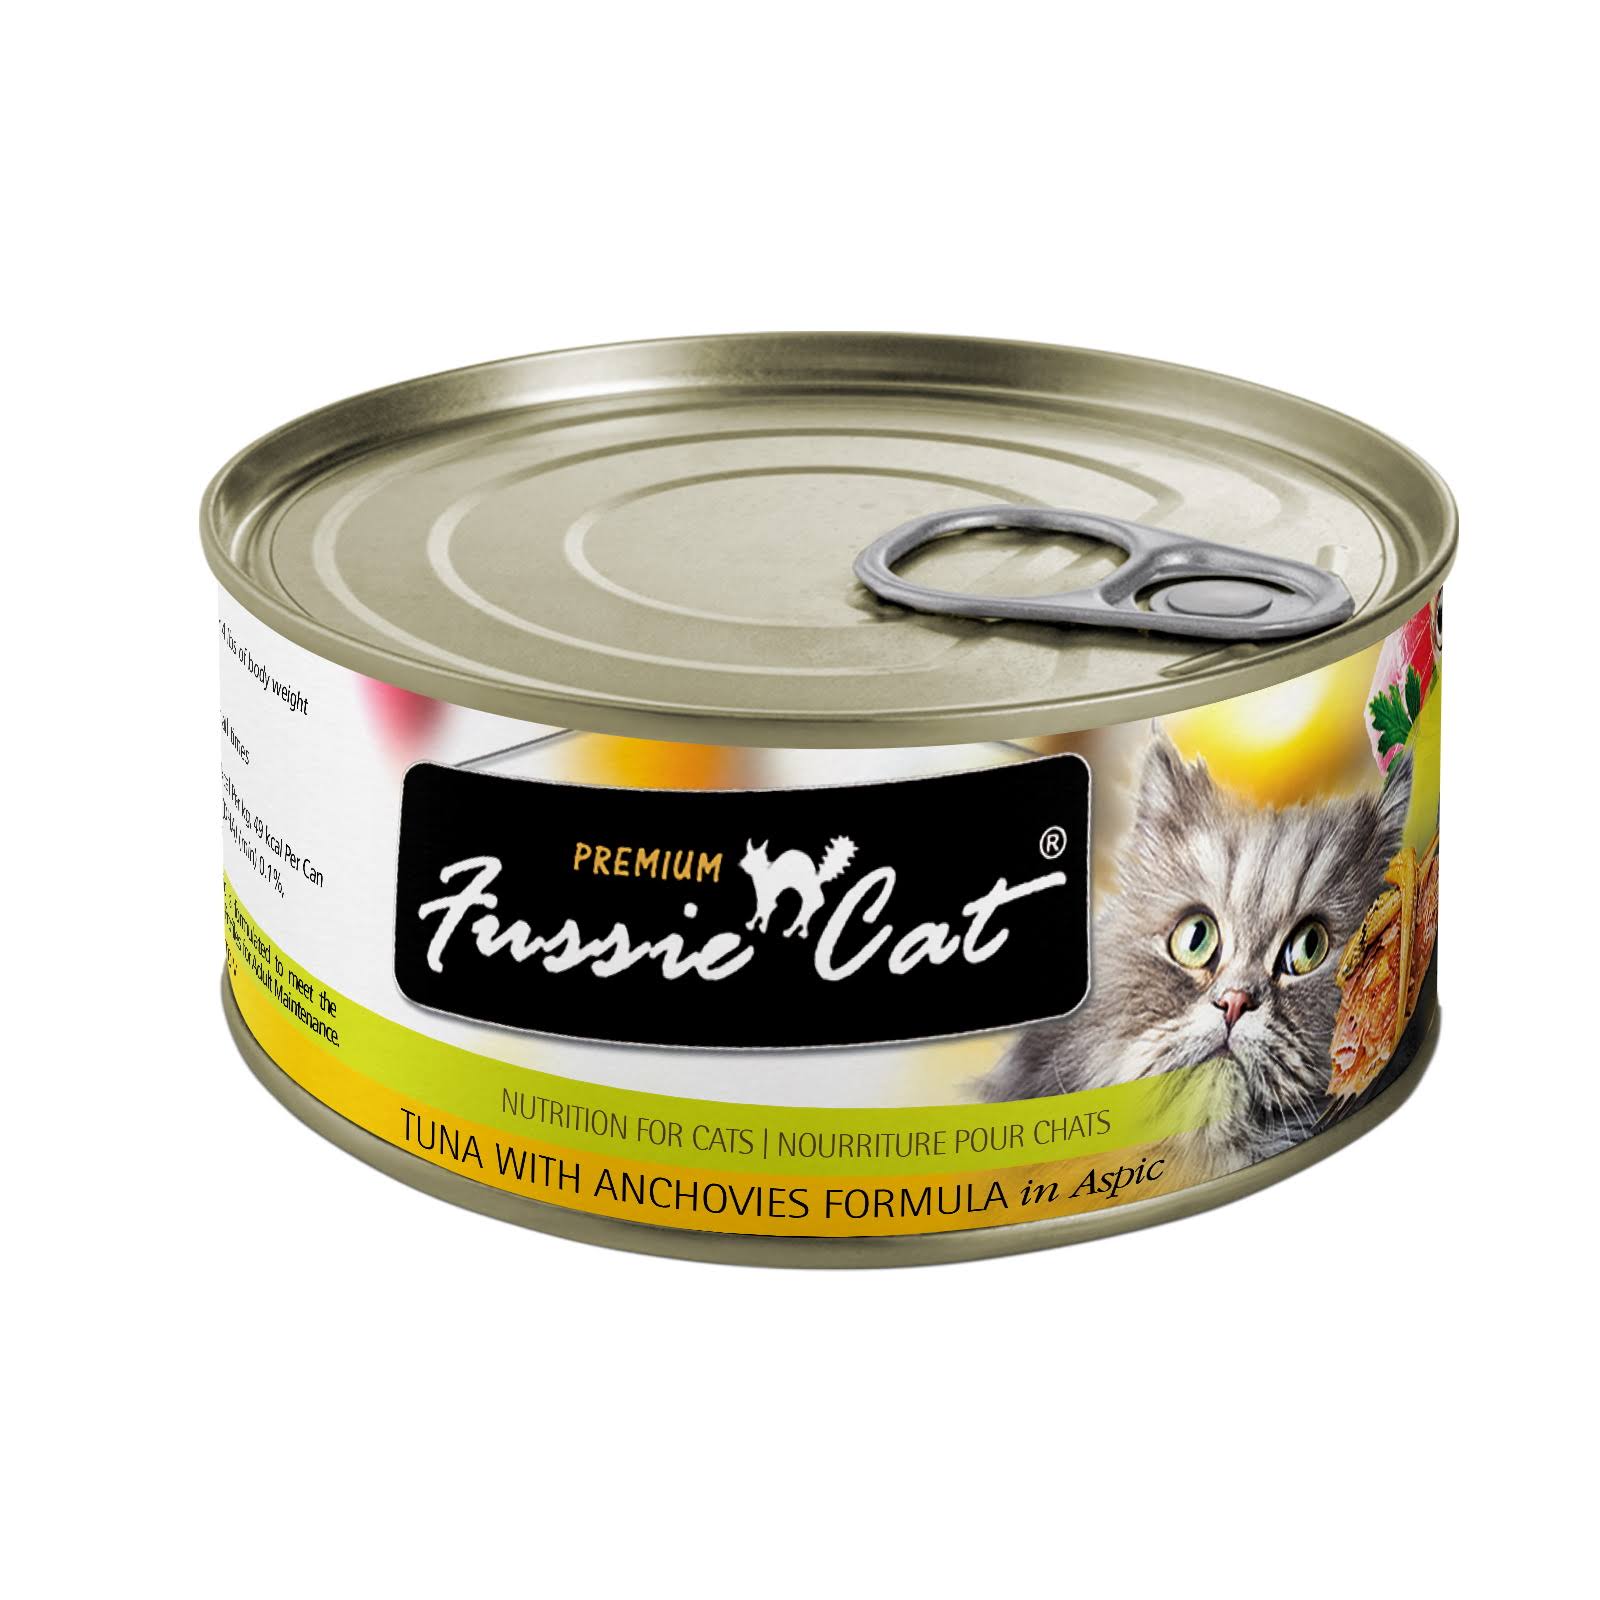 Fussie Cat Premium Cat Food - Tuna with Anchovies, 2.82oz